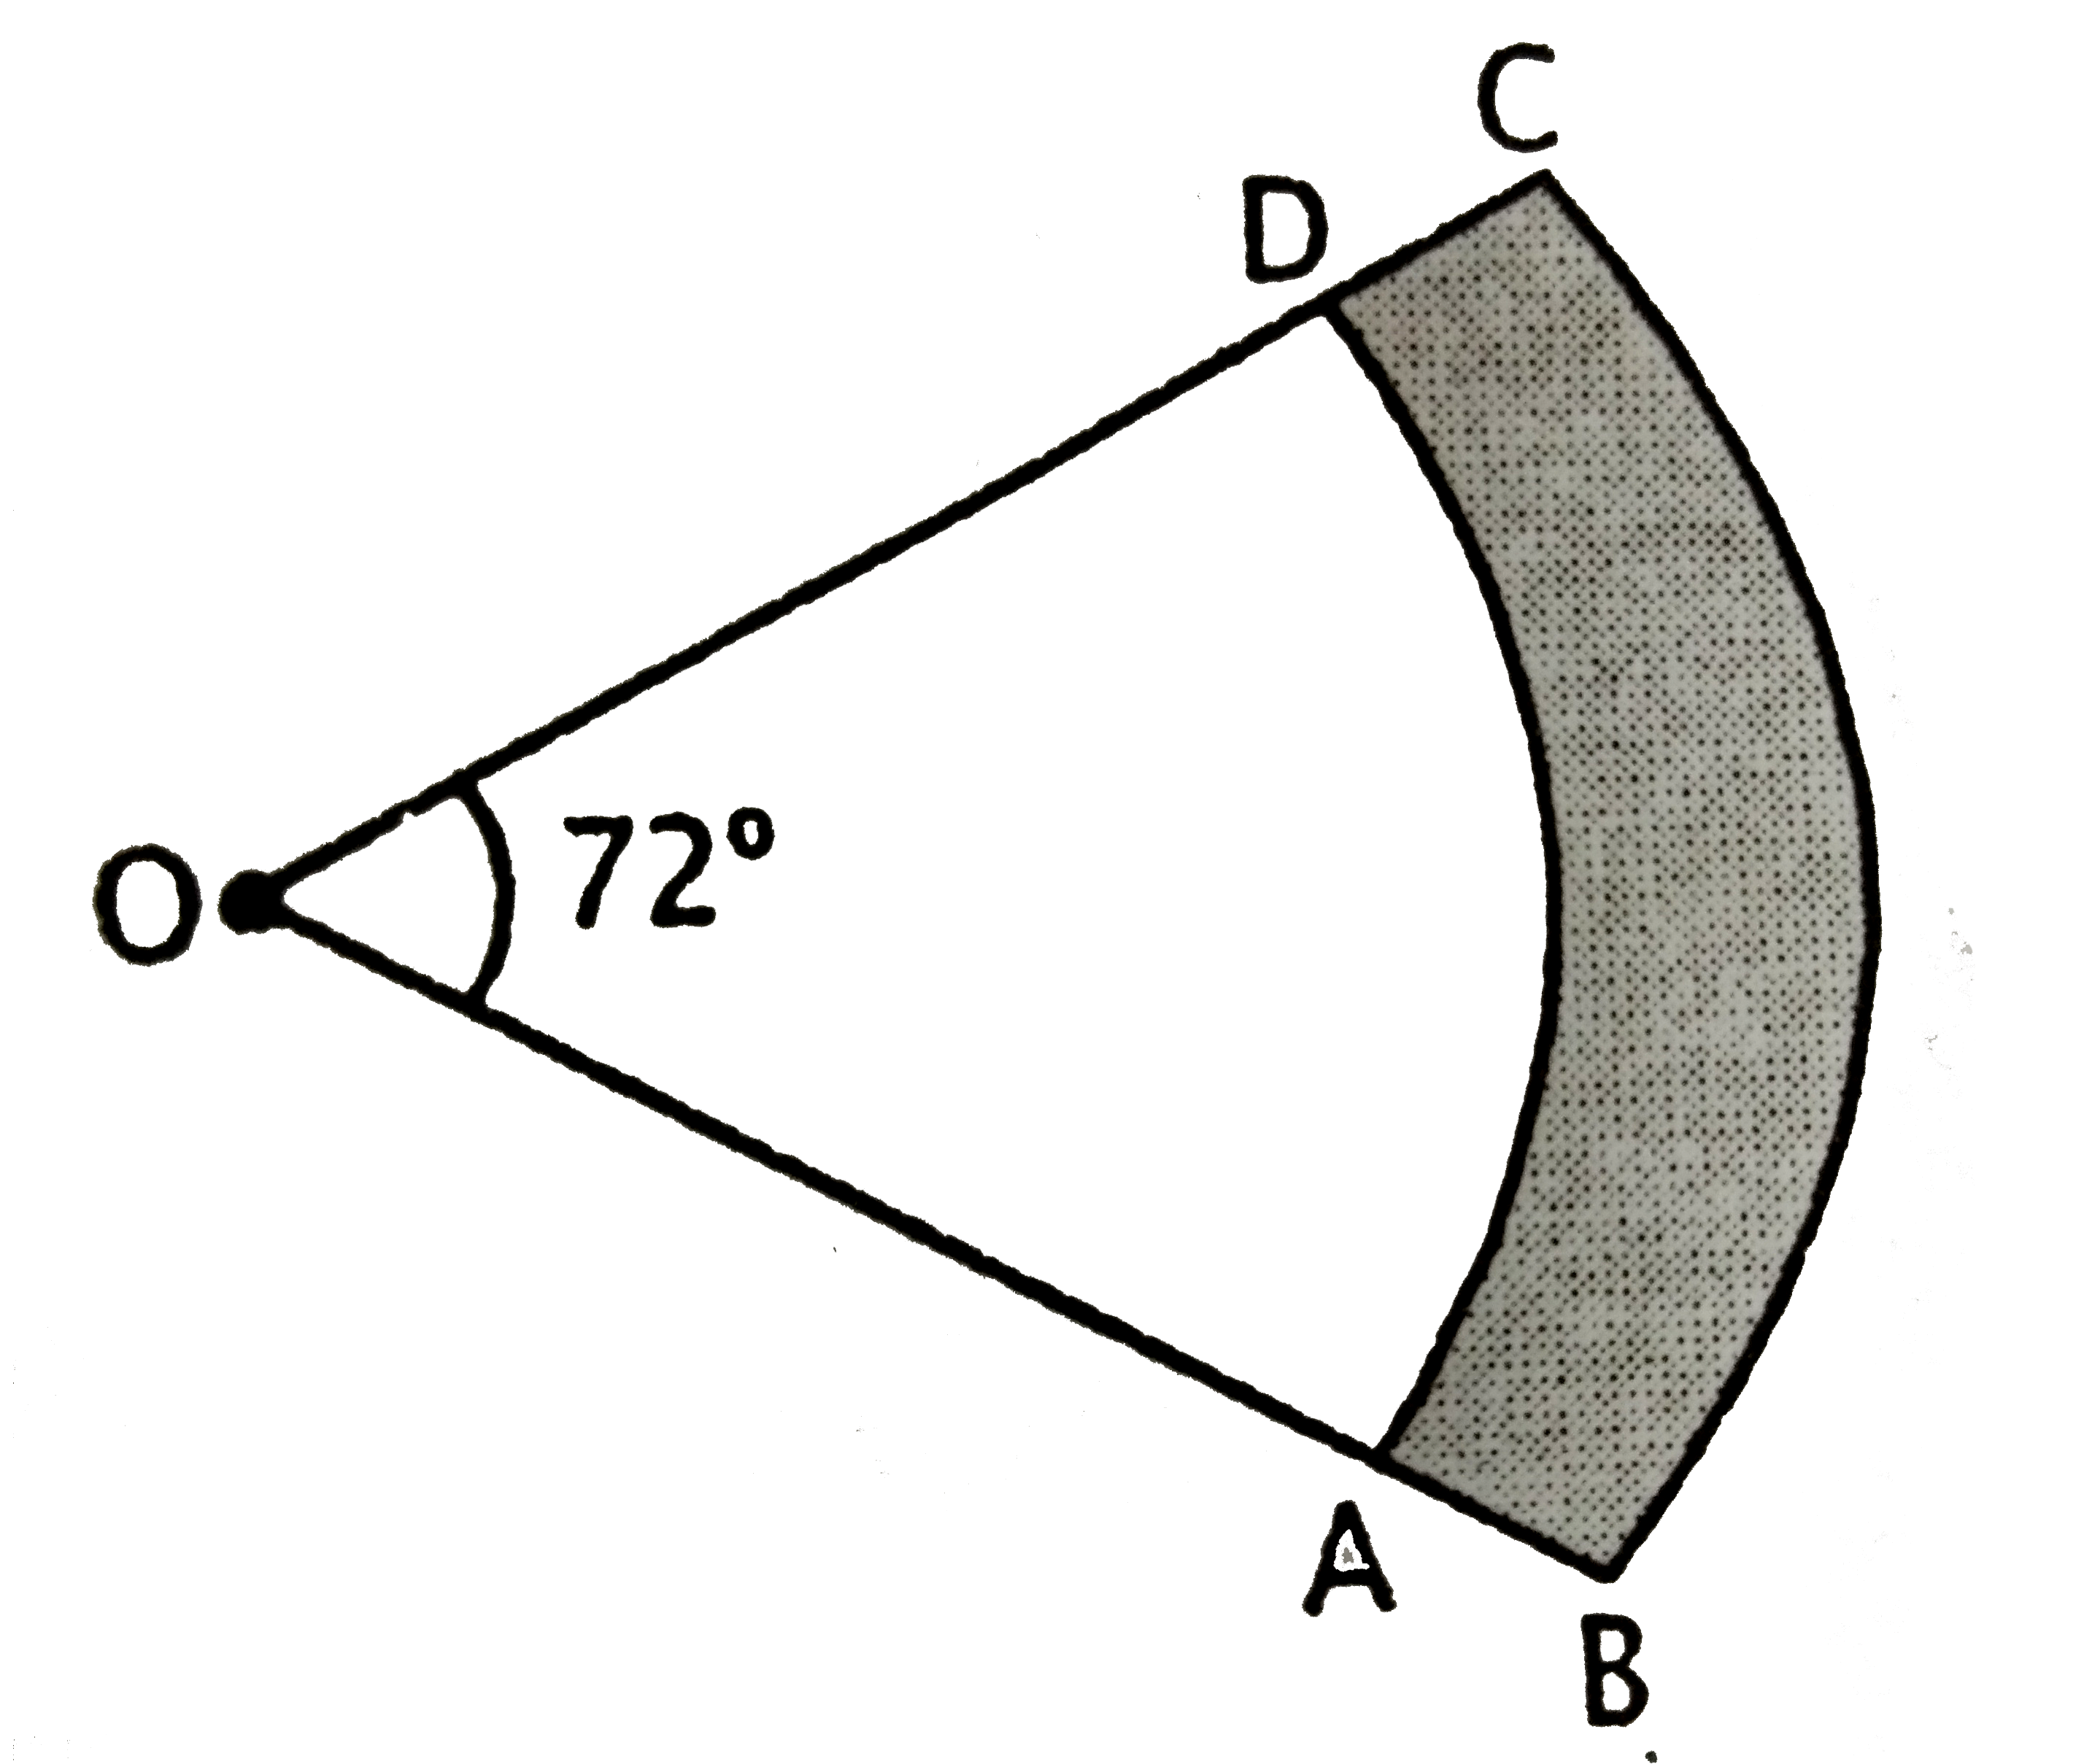 दिए गए  चित्र में  छायांकित  क्षेत्र का  क्षेत्रफल     (cm ^2     में ), जहाँ O  वृत्त  का केंद्र में,  OA =  15 cm, OB = 20  cm     और      angle AOD = 72 ^ @   है: